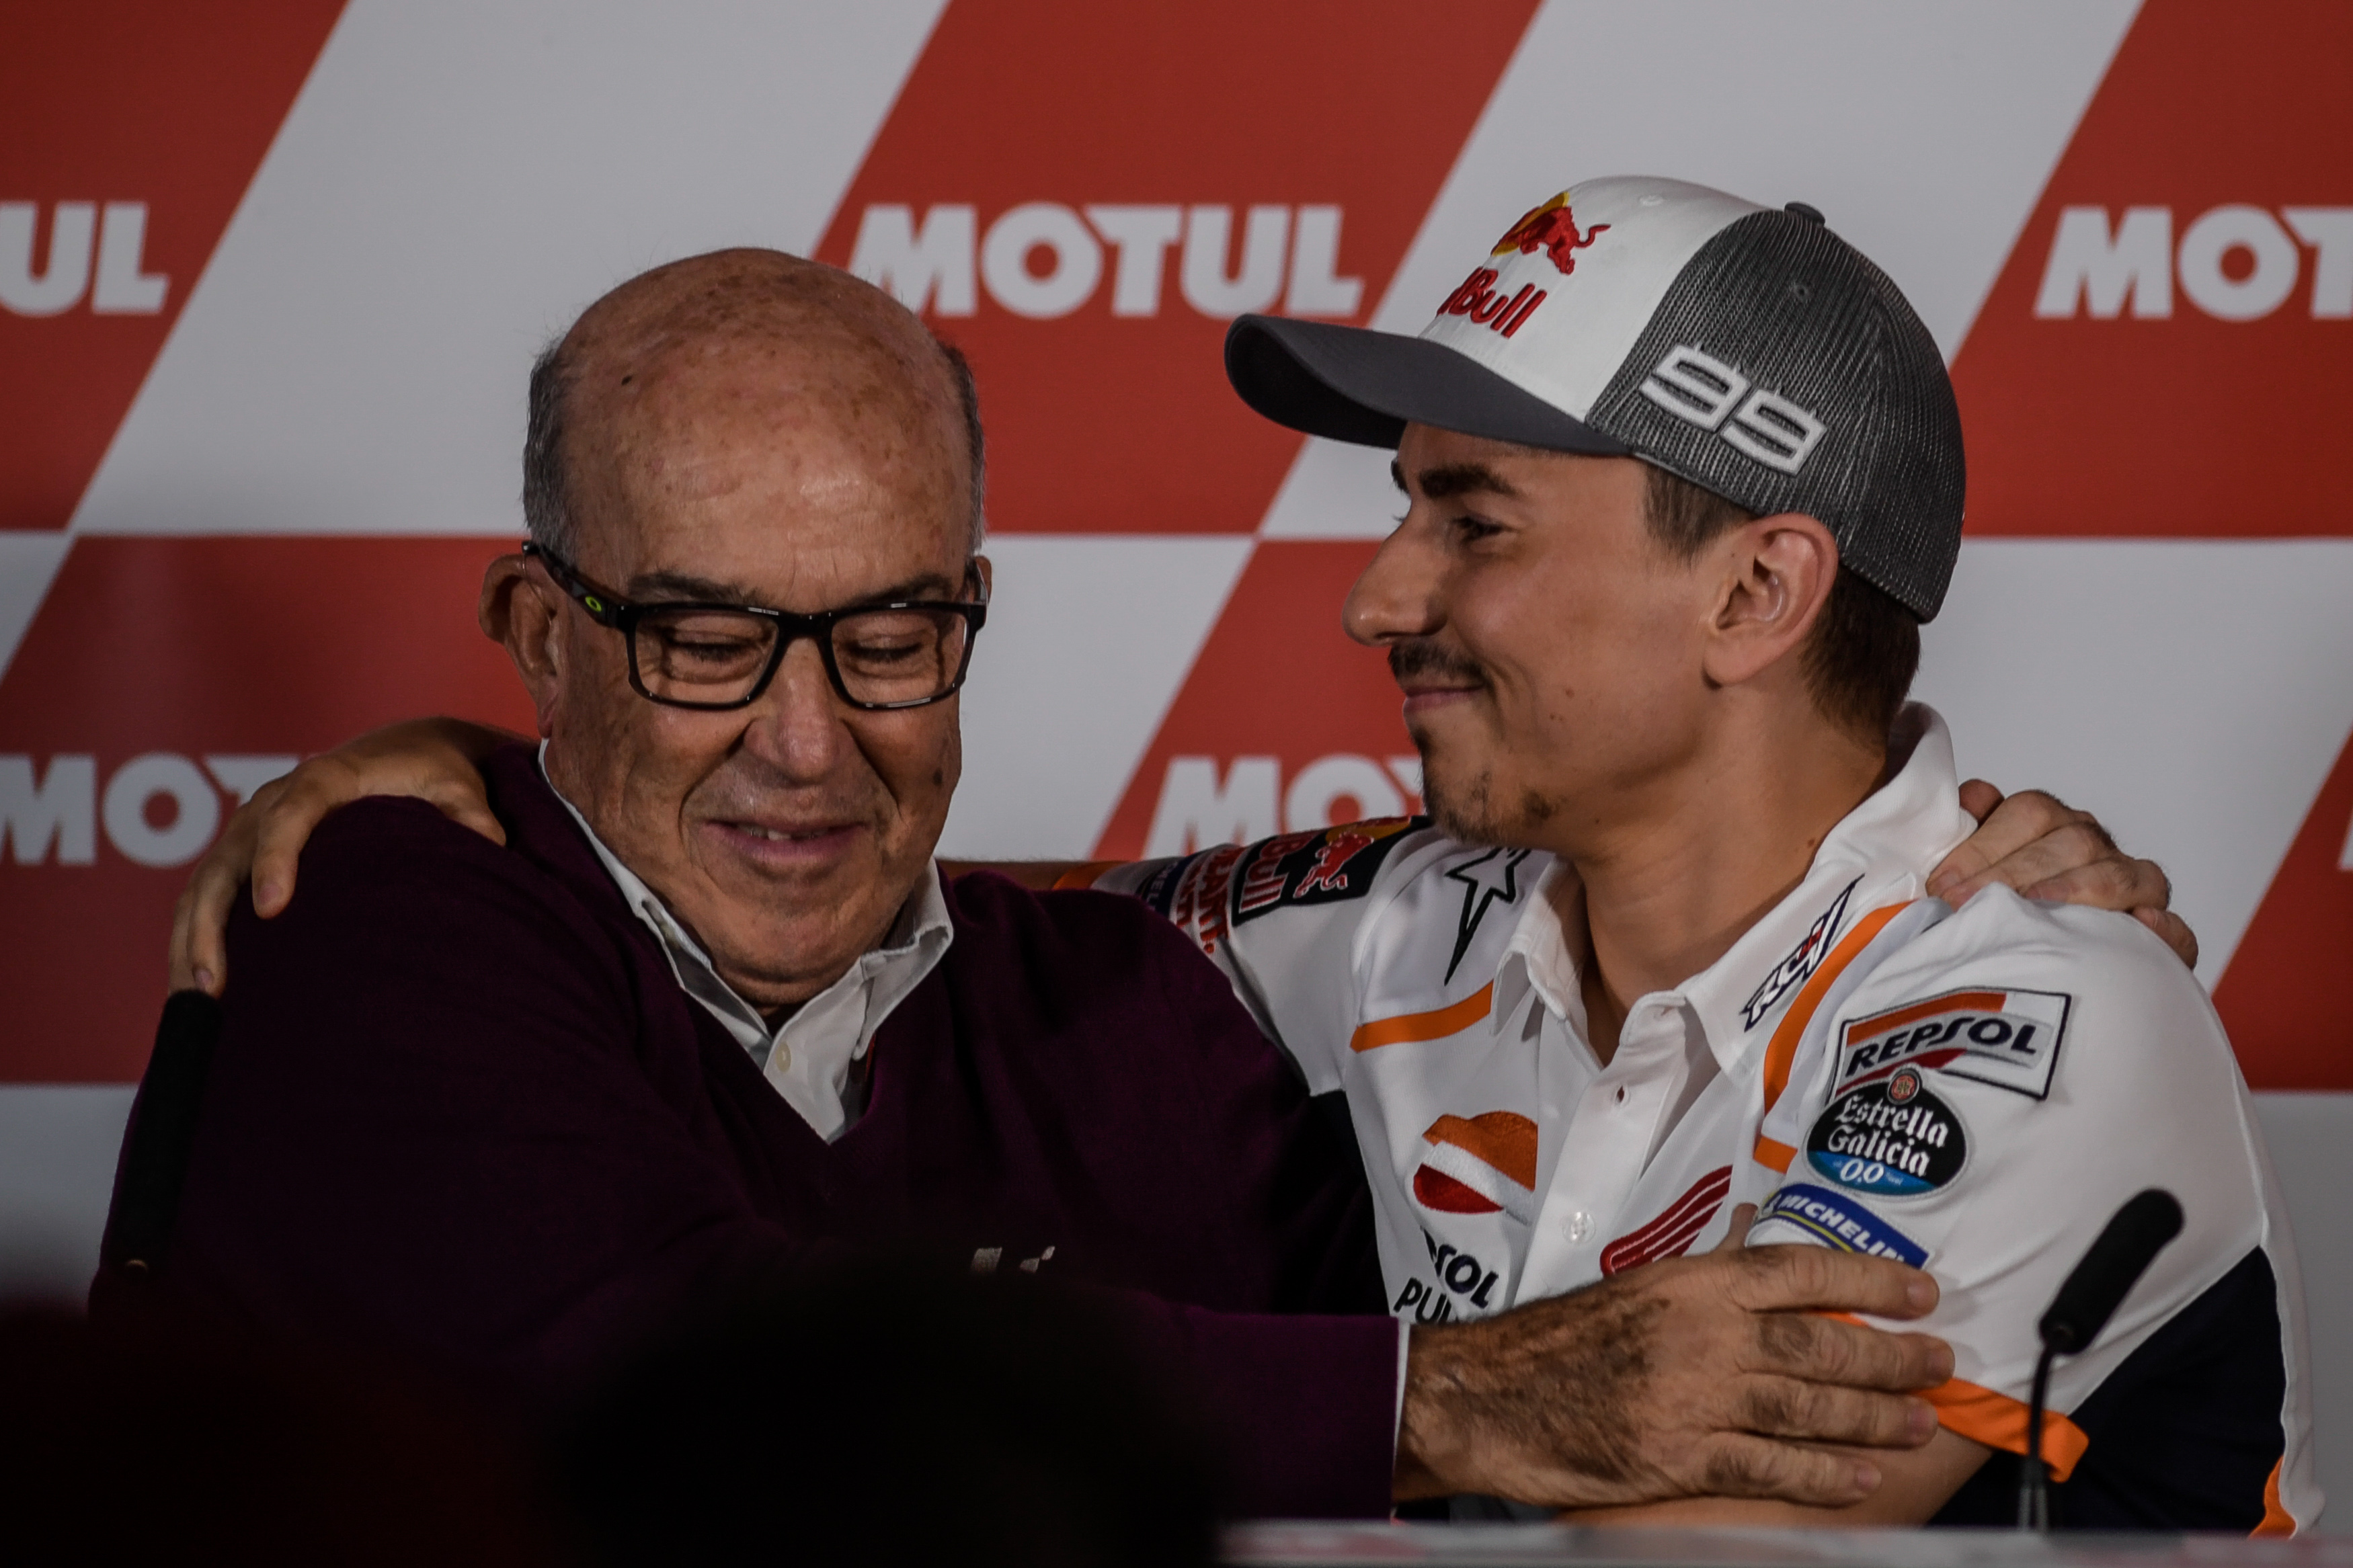 Jorge Lorenzo a Valencia, con Carmelo Ezpeleta durante conferenza stampa straordinaria, che annuncia il suo ritiro dalle corse